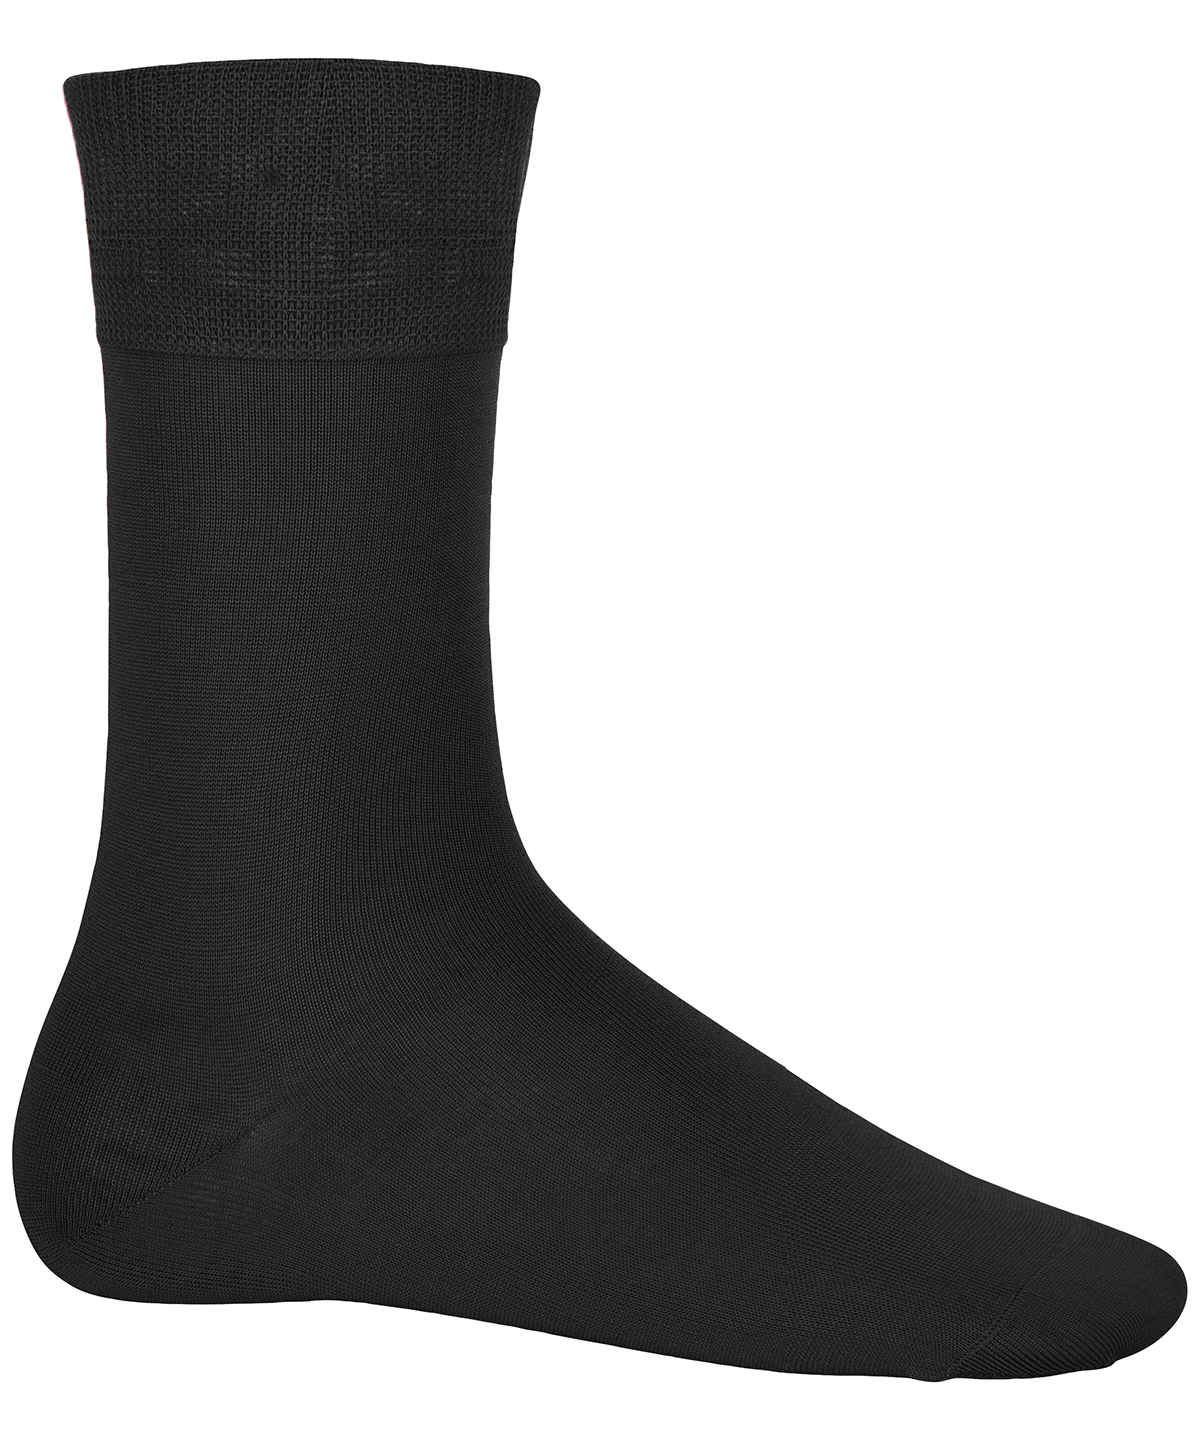 Cotton City Socks Black Size 1012